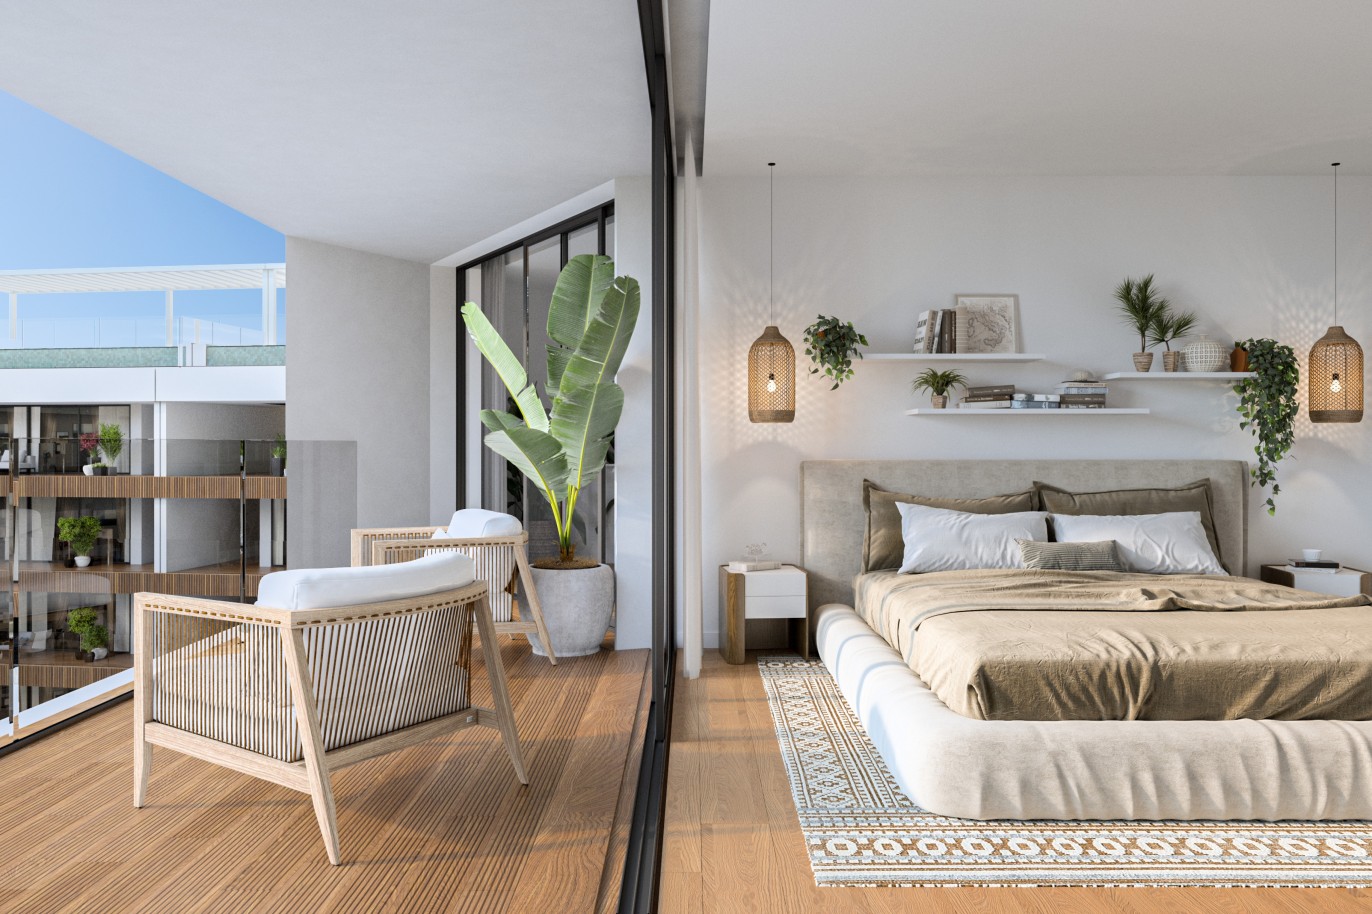 Appartements neufs avec vue sur mer, 1, 2 & 3 chambres, à vendre à Olhão, Algarve_243912